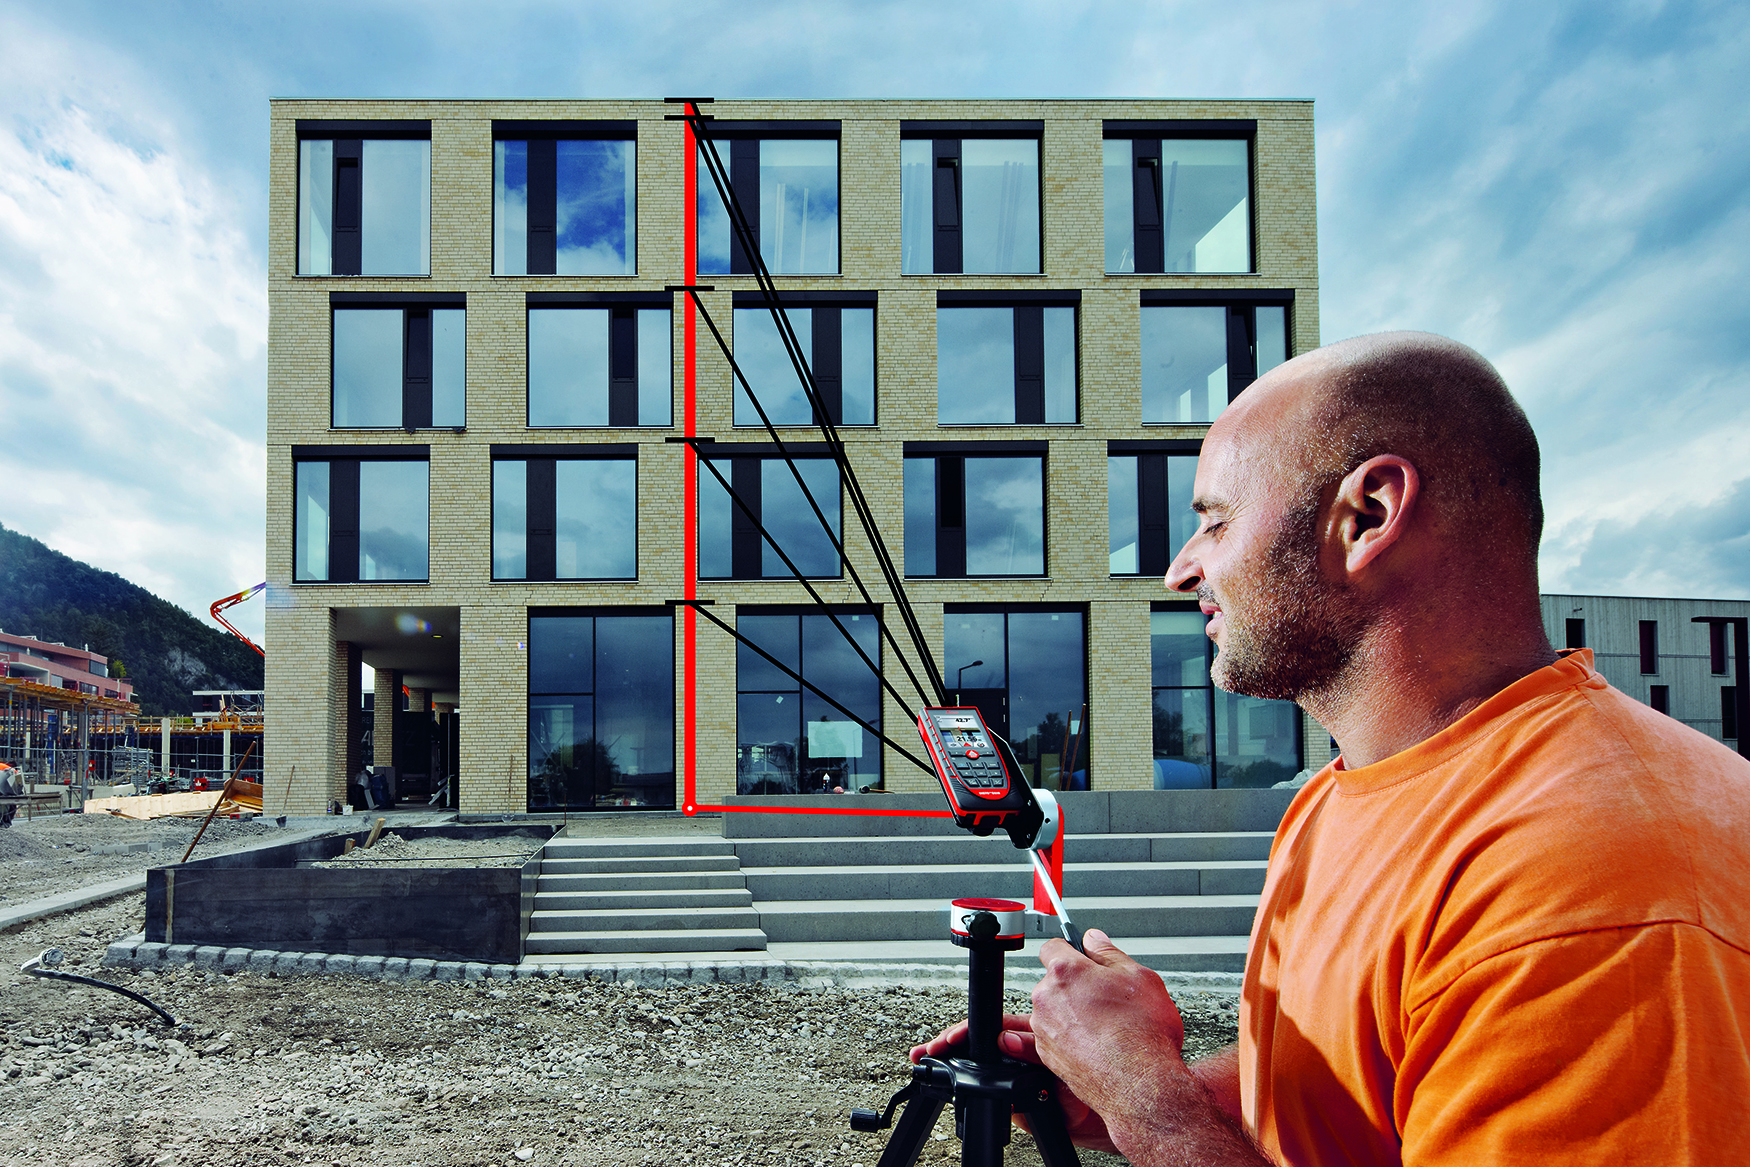 Mann trackt Höhe eines mehr stöckigen Gebäudes mit einem Leica DISTO D510 Entfernungsmesser